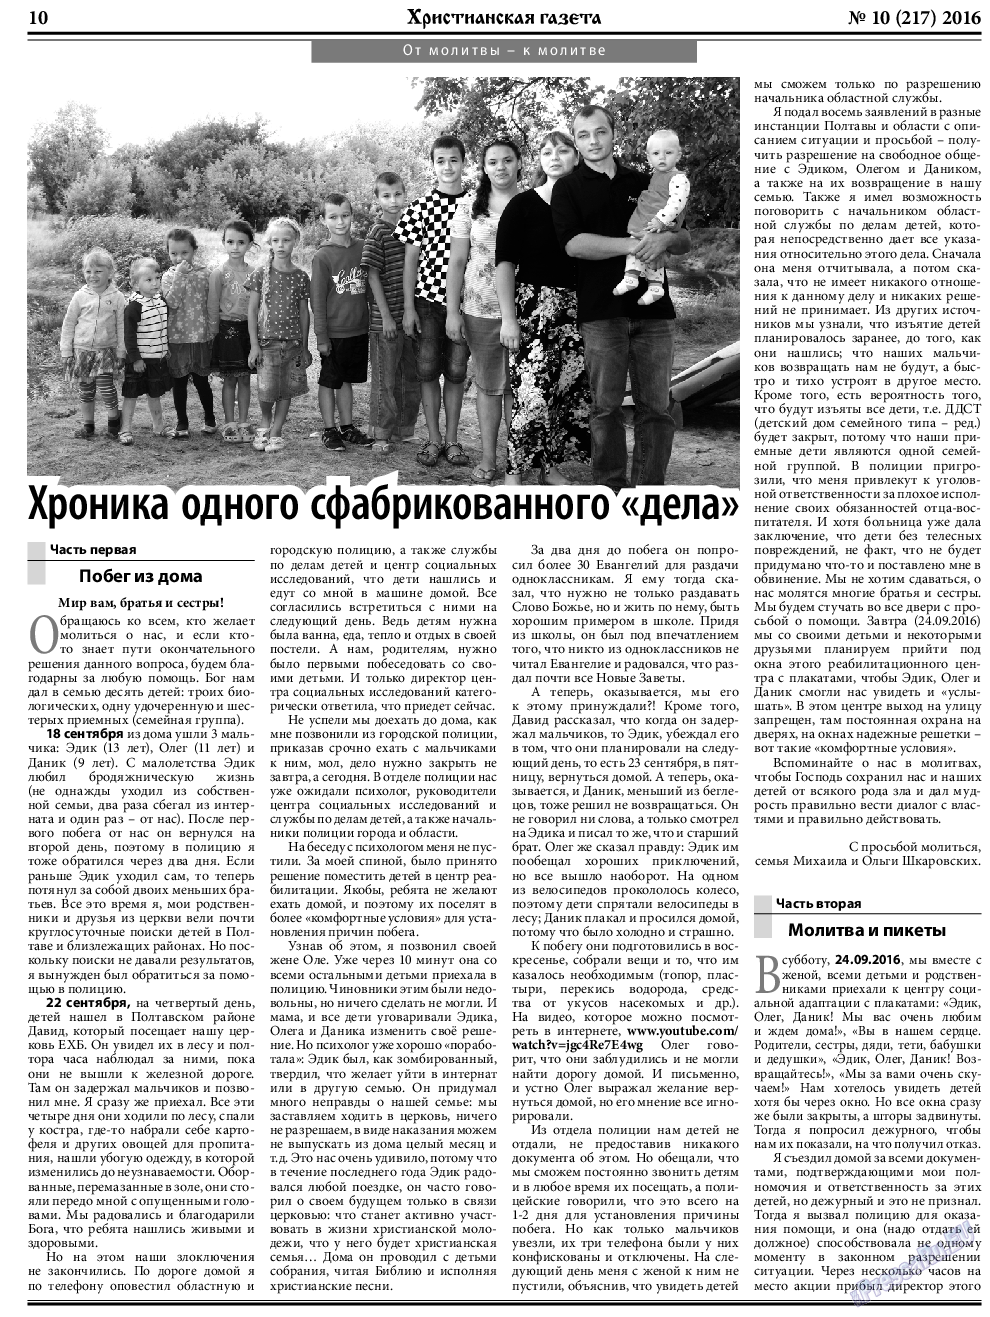 Христианская газета, газета. 2016 №10 стр.10